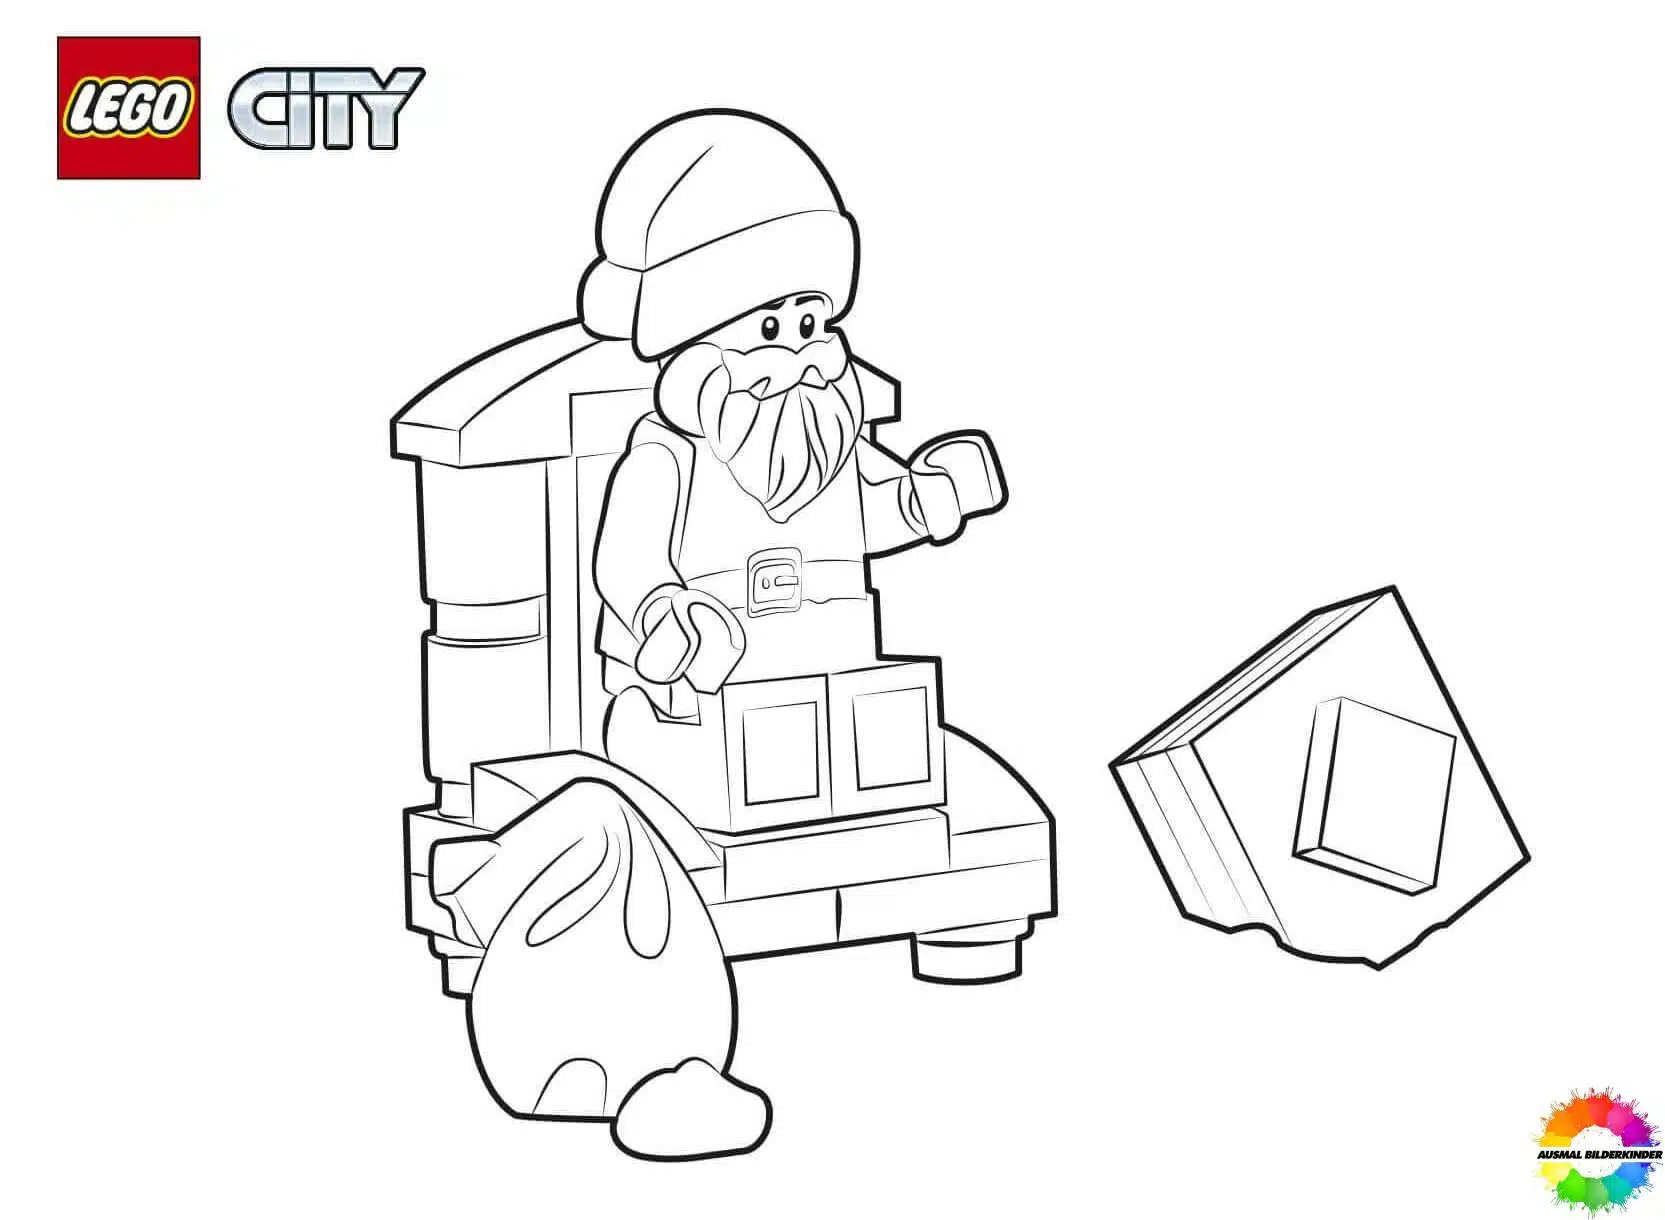 LEGO City 26